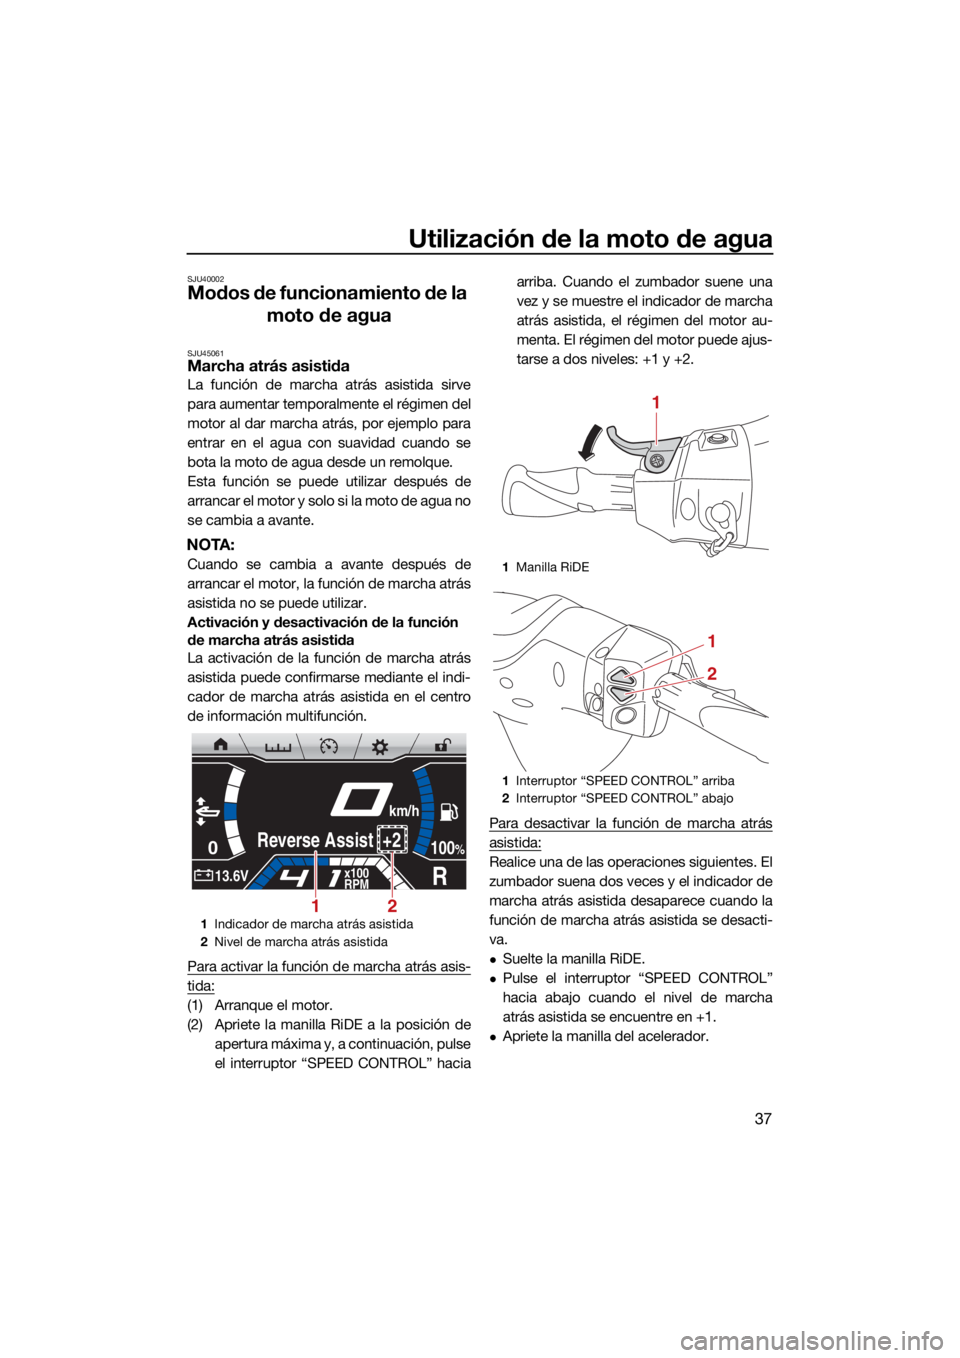 YAMAHA FX SVHO 2021  Manuale de Empleo (in Spanish) Utilización de la moto de agua
37
SJU40002
Modos de funcionamiento de la moto de agua
SJU45061Marcha atrás asistida
La función de marcha atrás asistida sirve
para aumentar temporalmente el régime